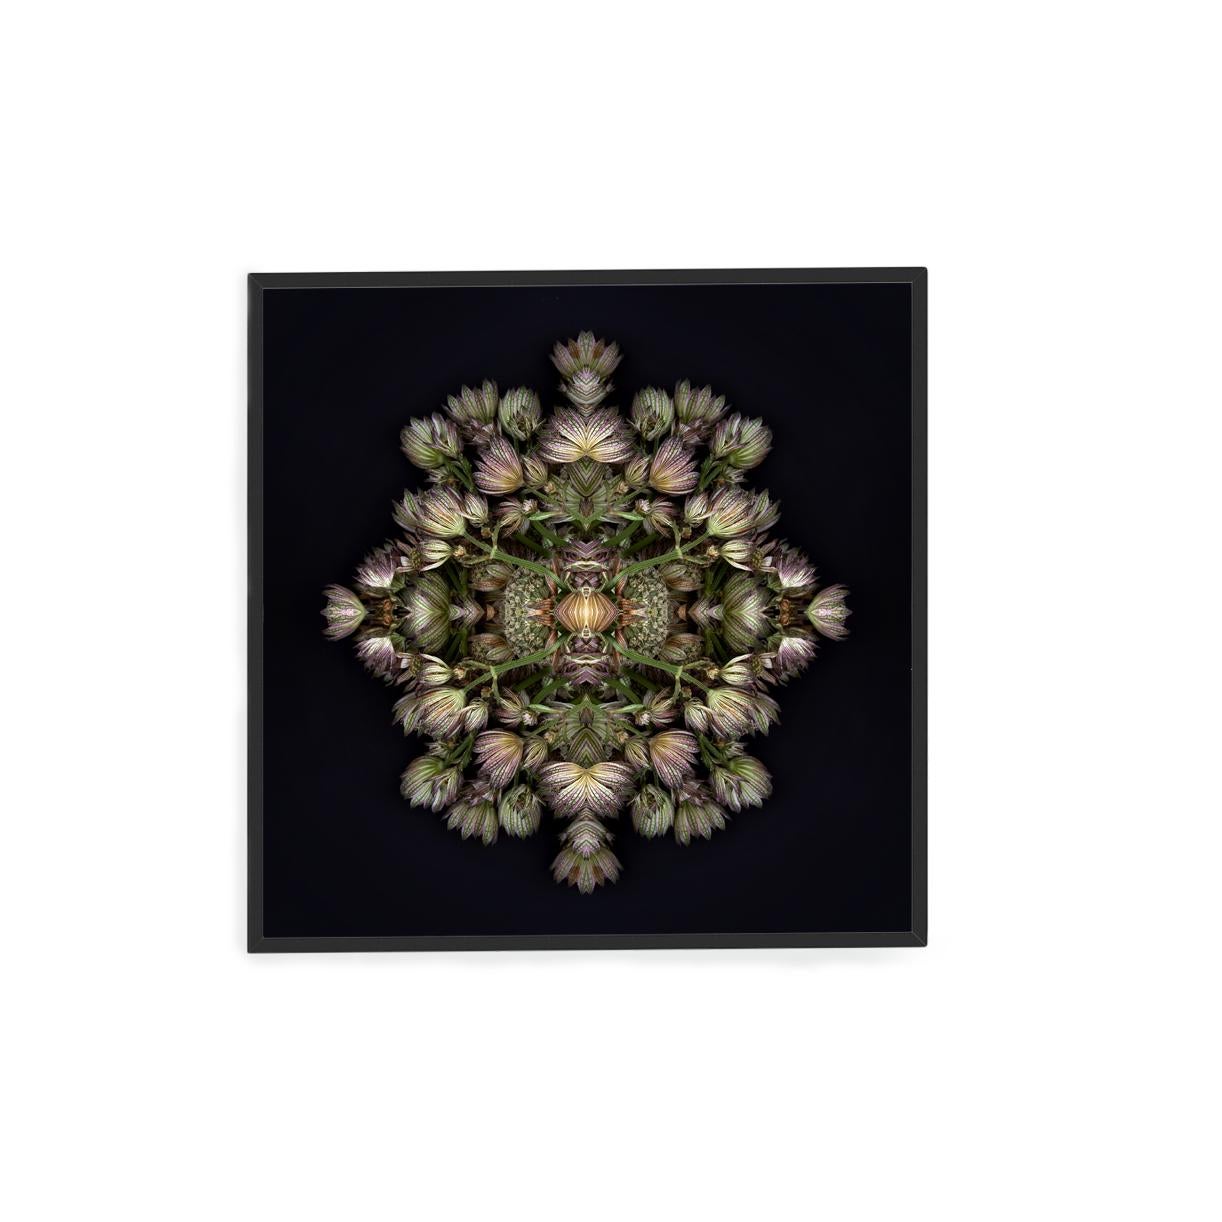 Dieser Druck zeigt die spielerische Beziehung zwischen natürlichen Formen und Pflanzen. In diesem Bild nutzt Erin die natürliche Komposition der violetten Blumen und ihre eigene Collagearbeit, um ein hypnotisches Mandala mit den Blumen zu schaffen.